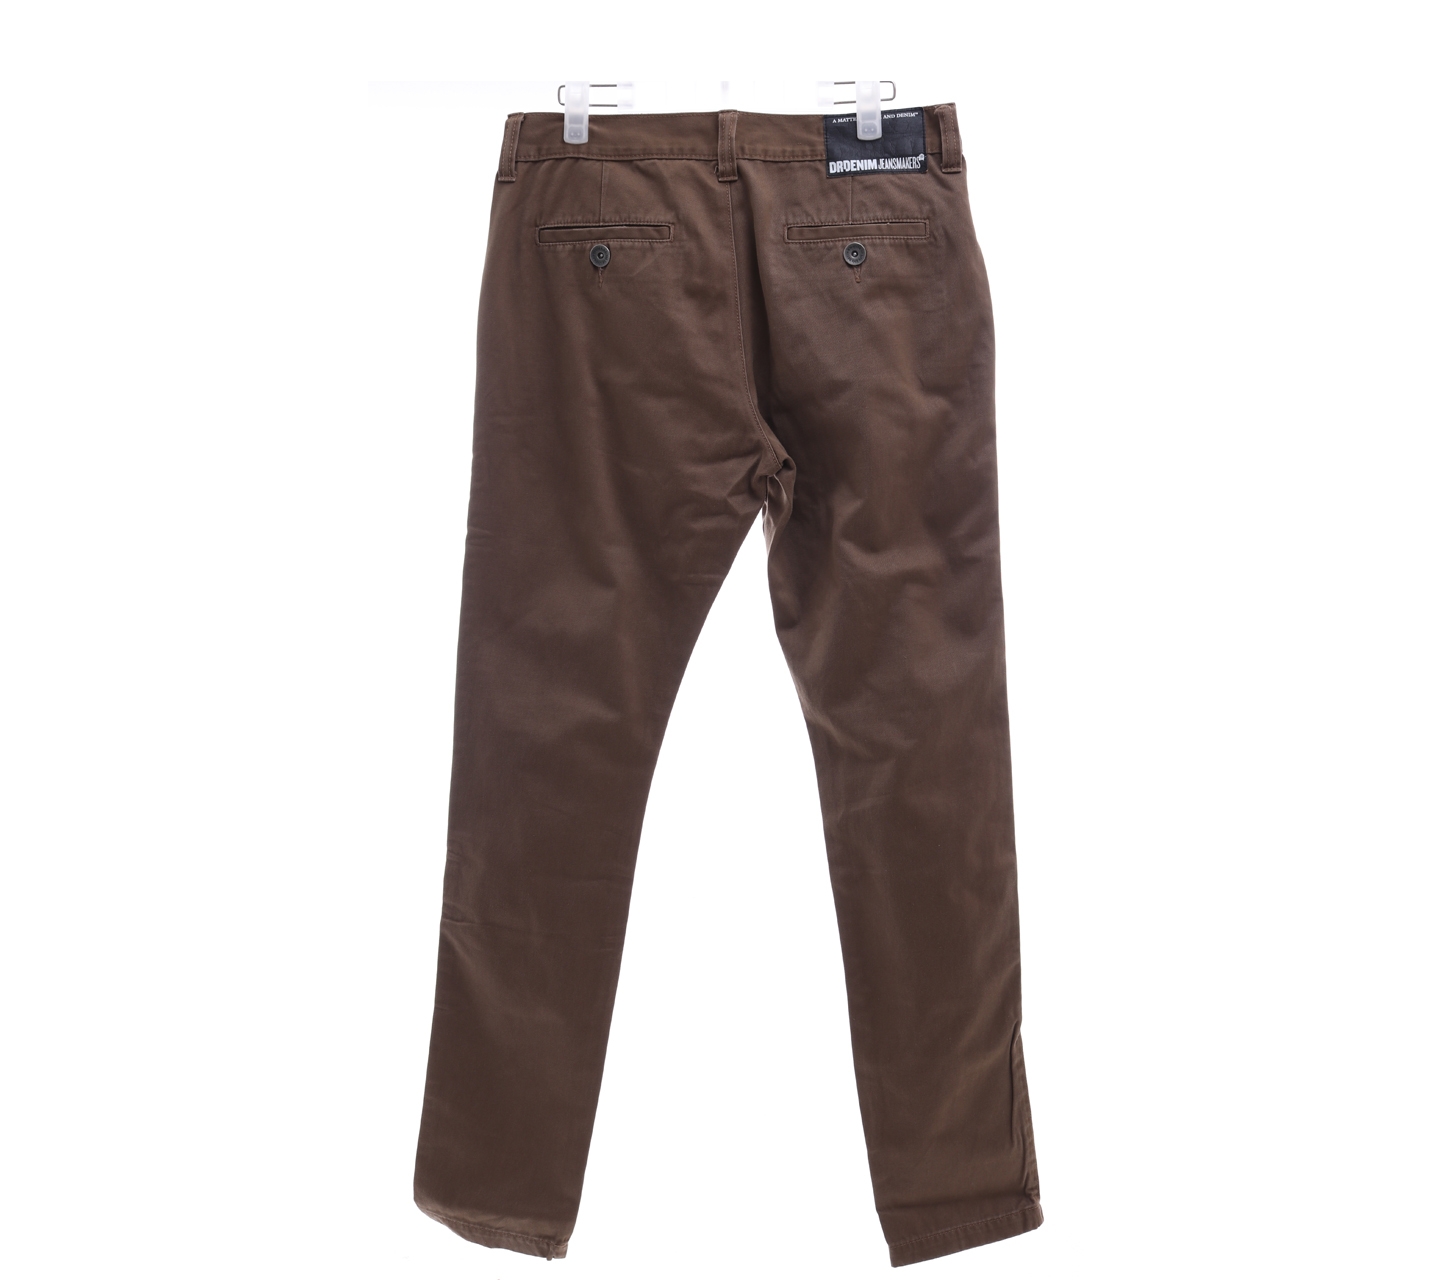 Drdenim brown long pants